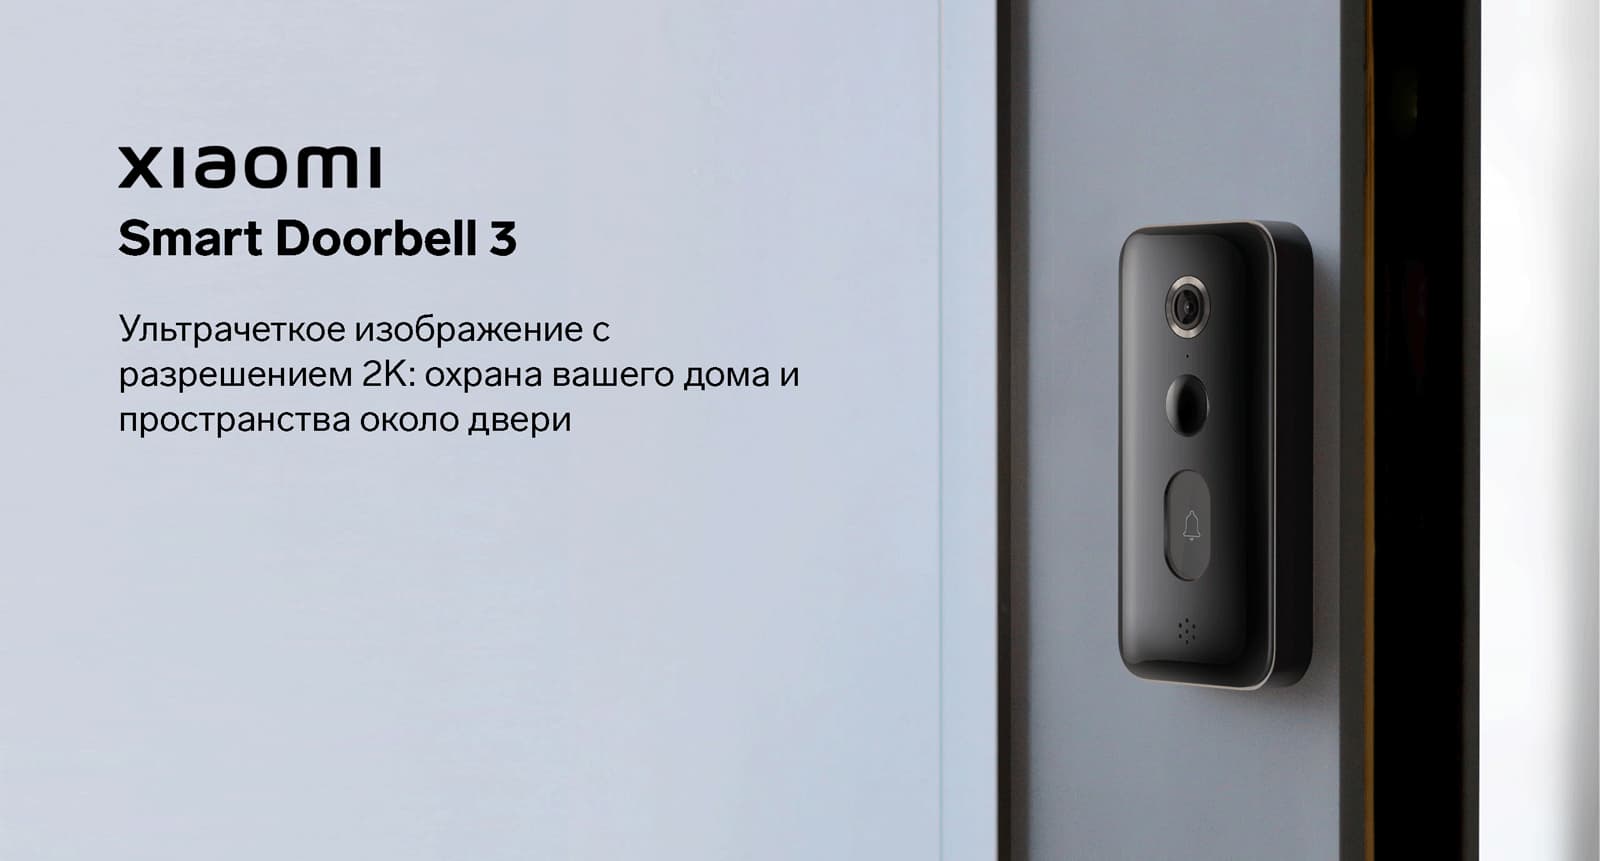 Звонок xiaomi doorbell 3. Умный дверной звонок Xiaomi Smart Doorbell 3. Умный дверной звонок Xiaomi Smart Doorbell 3 черный bhr5416gl. Видеозвонок Xiaomi Mijia Smart Doorbell 3. Звонок дверной умный Xiaomi Smart Doorbell 3 как крепить.